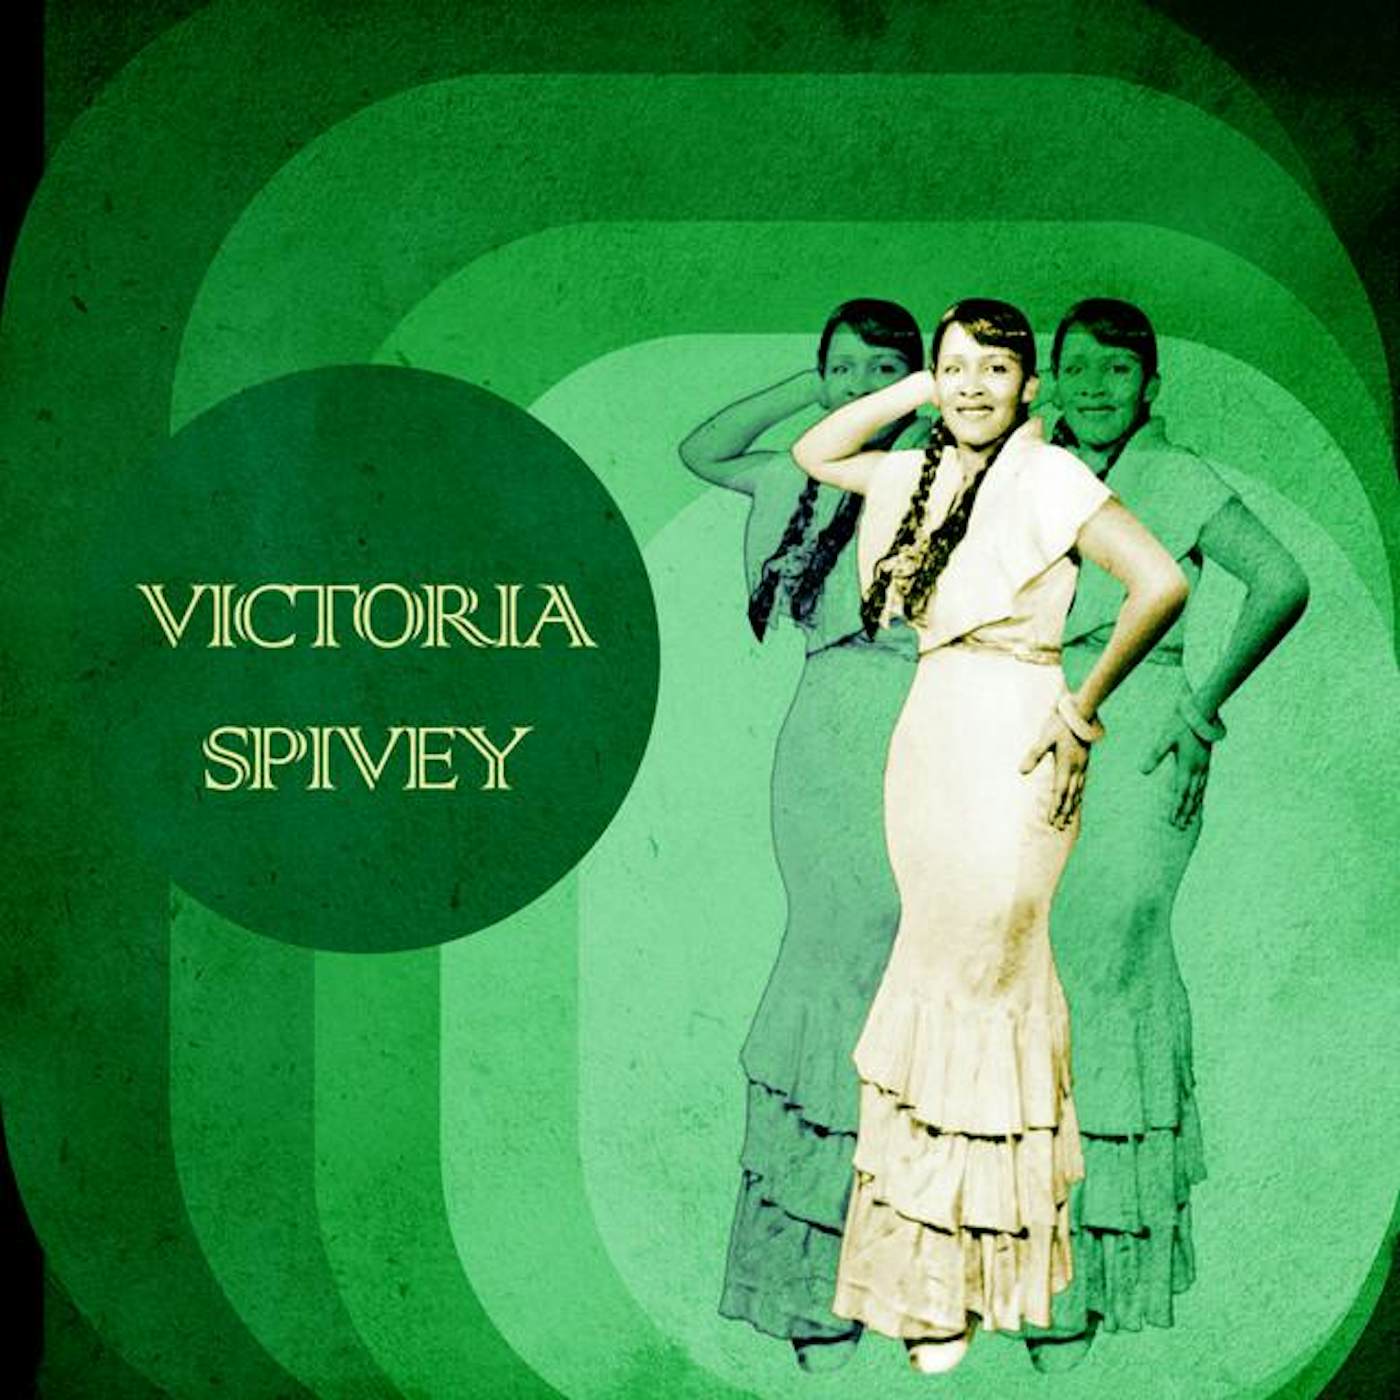 Victoria Spivey